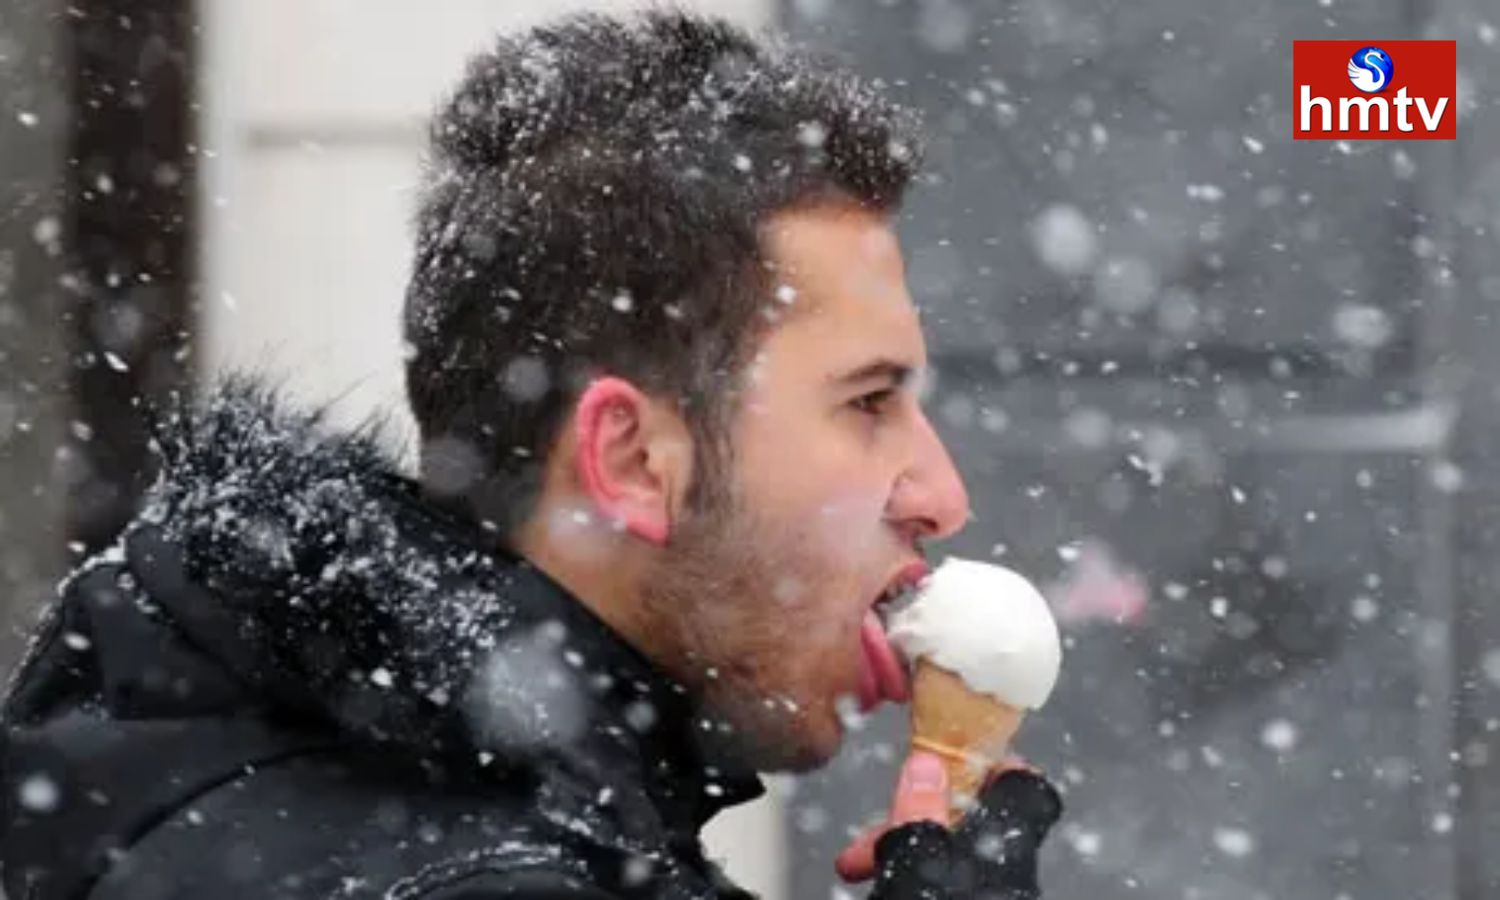 Легче переношу холод. Мороженое зимой. Человек ест мороженое. Мороженое зимой на улице. Есть мороженое зимой на улице.